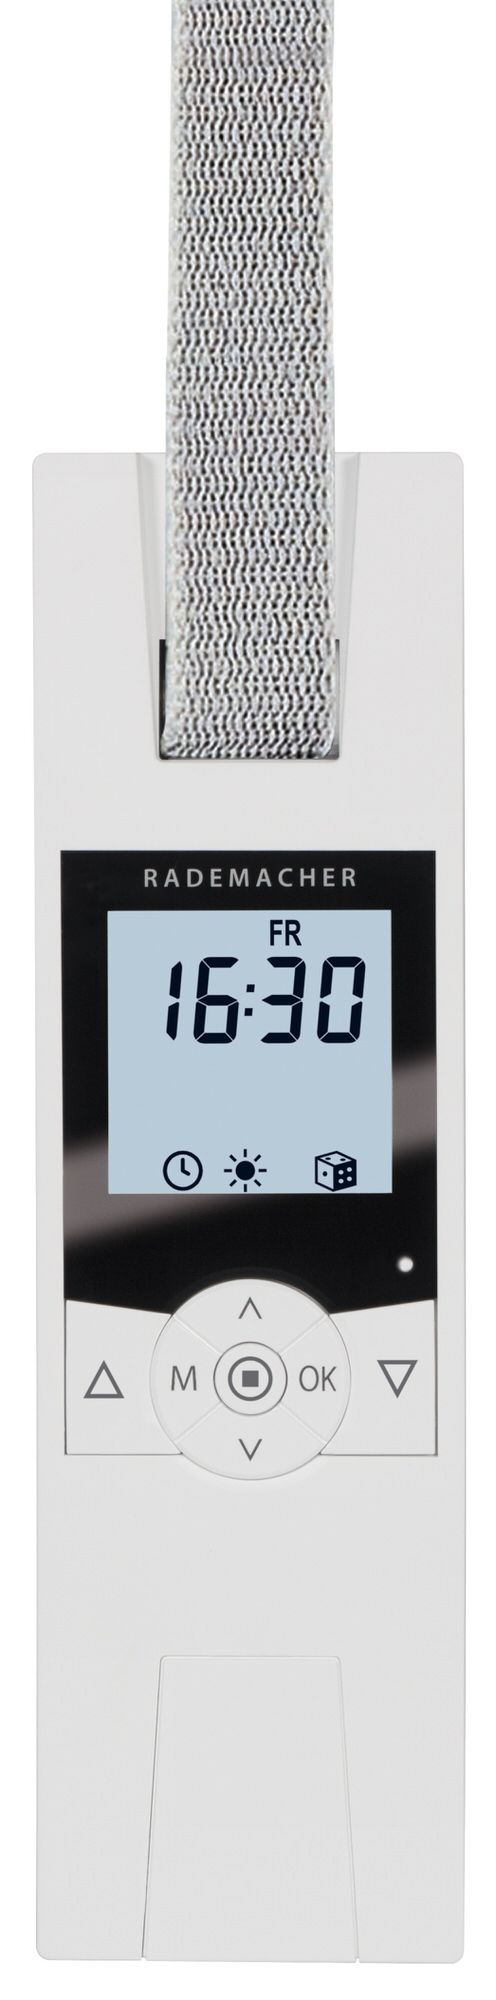 Rademacher RolloTron Comfort 1700